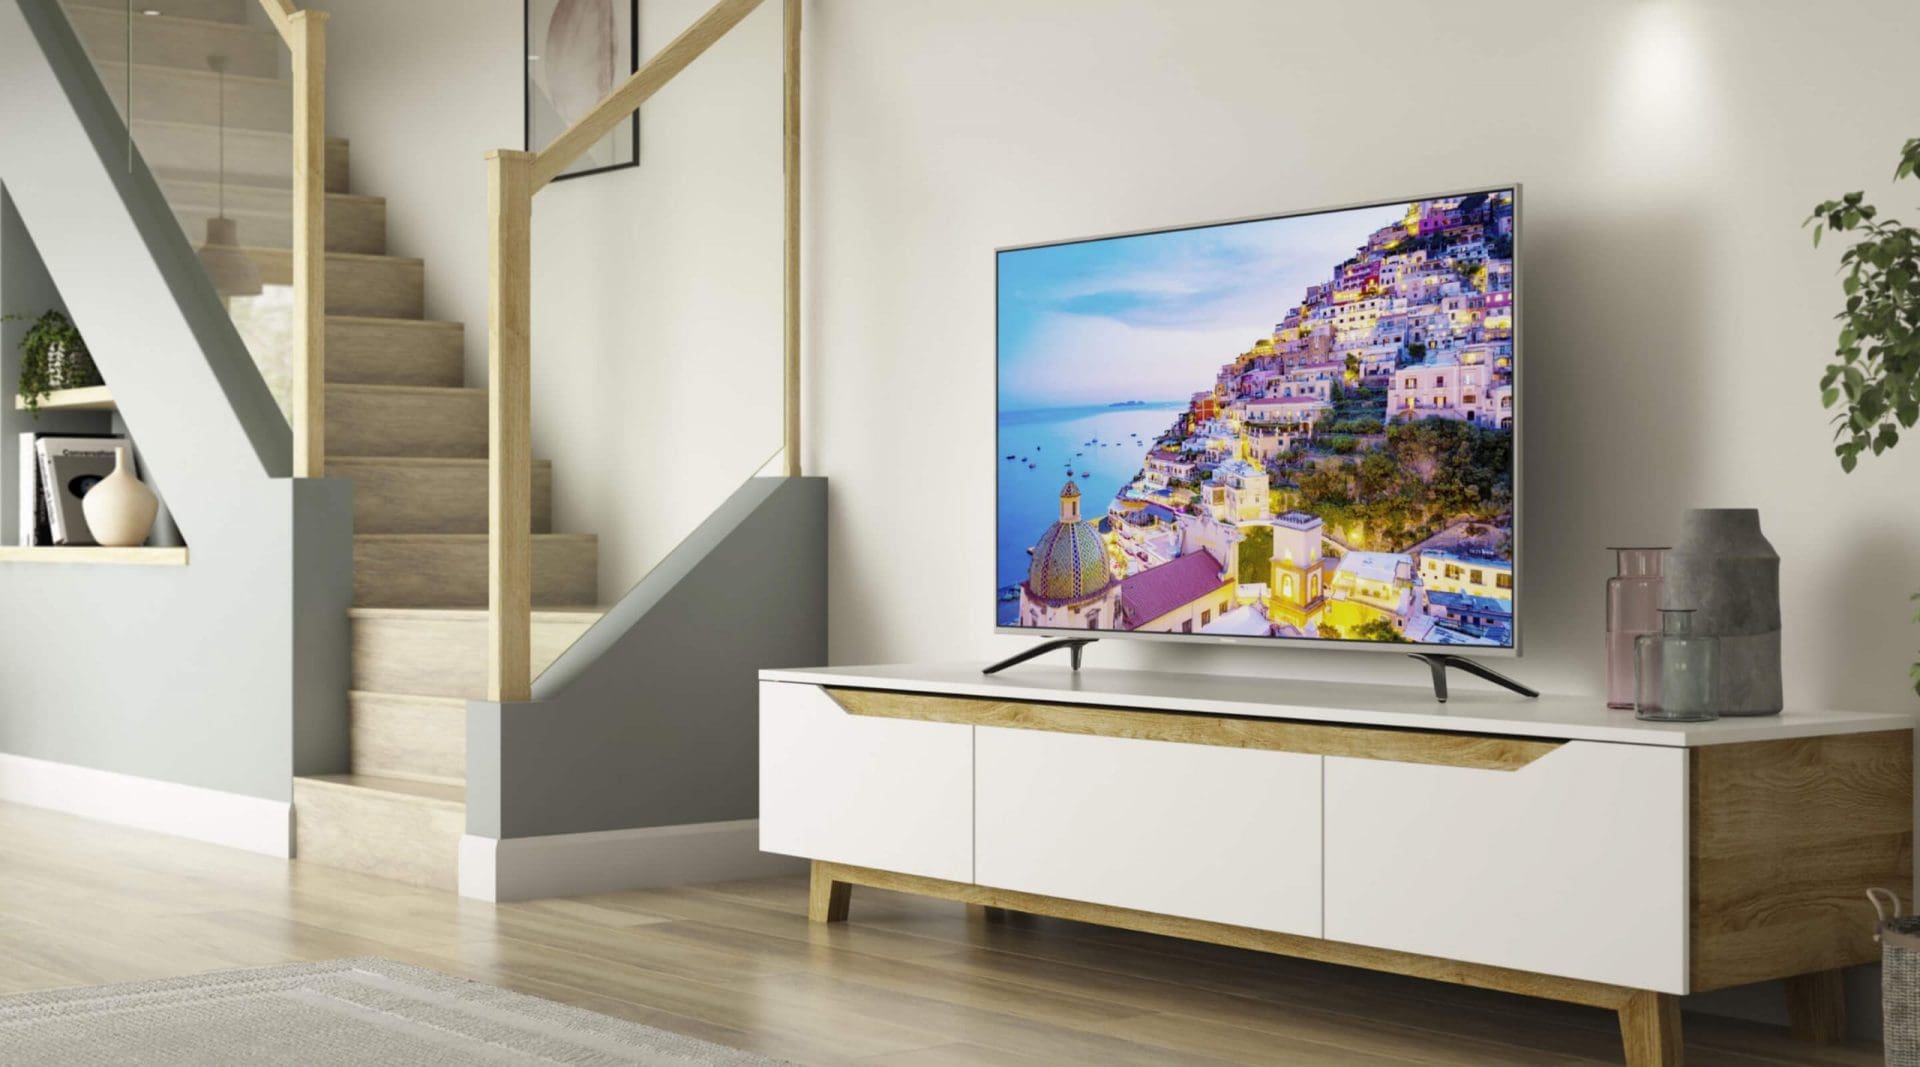 Hisense TV in living room